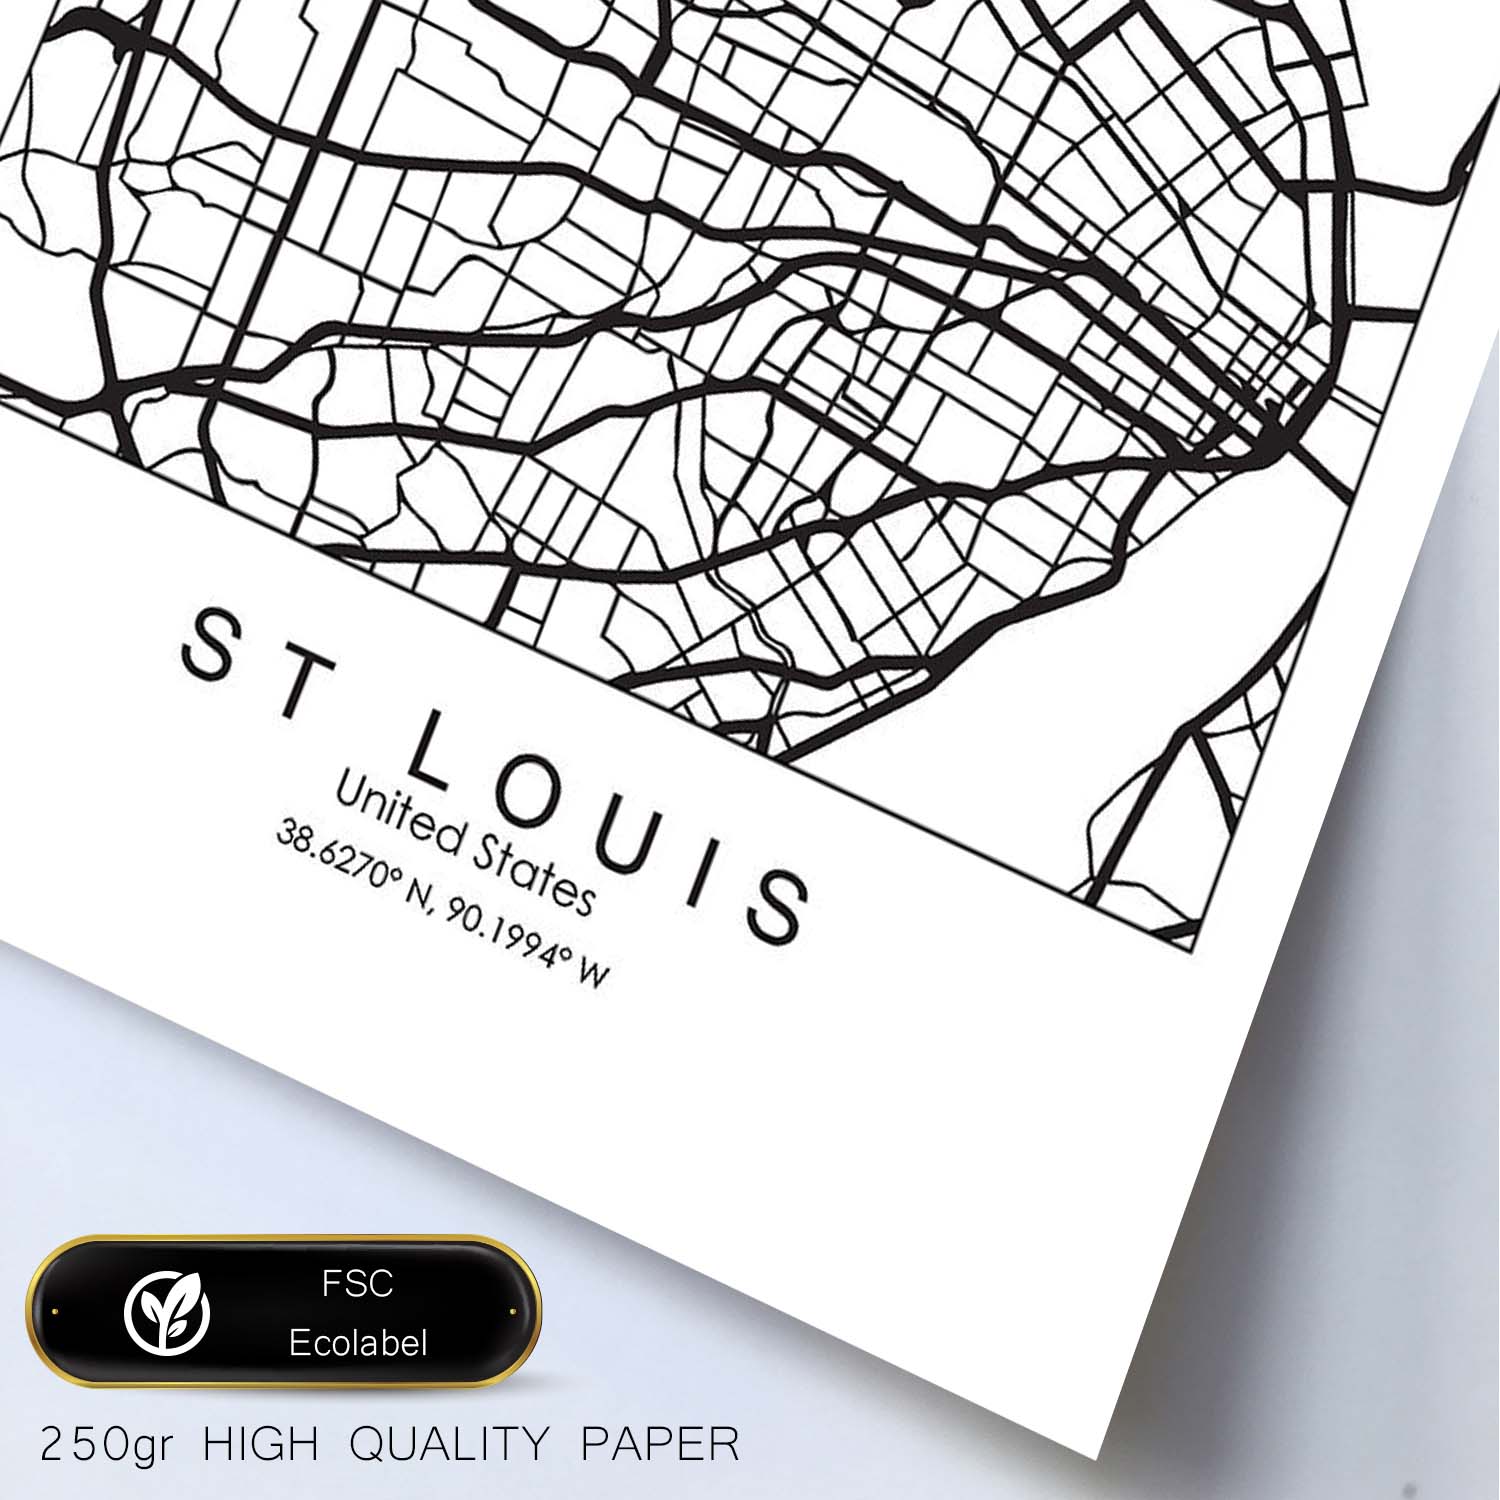 Poster con mapa de St. Louis. Lámina de Estados Unidos, con imágenes de mapas y carreteras-Artwork-Nacnic-Nacnic Estudio SL